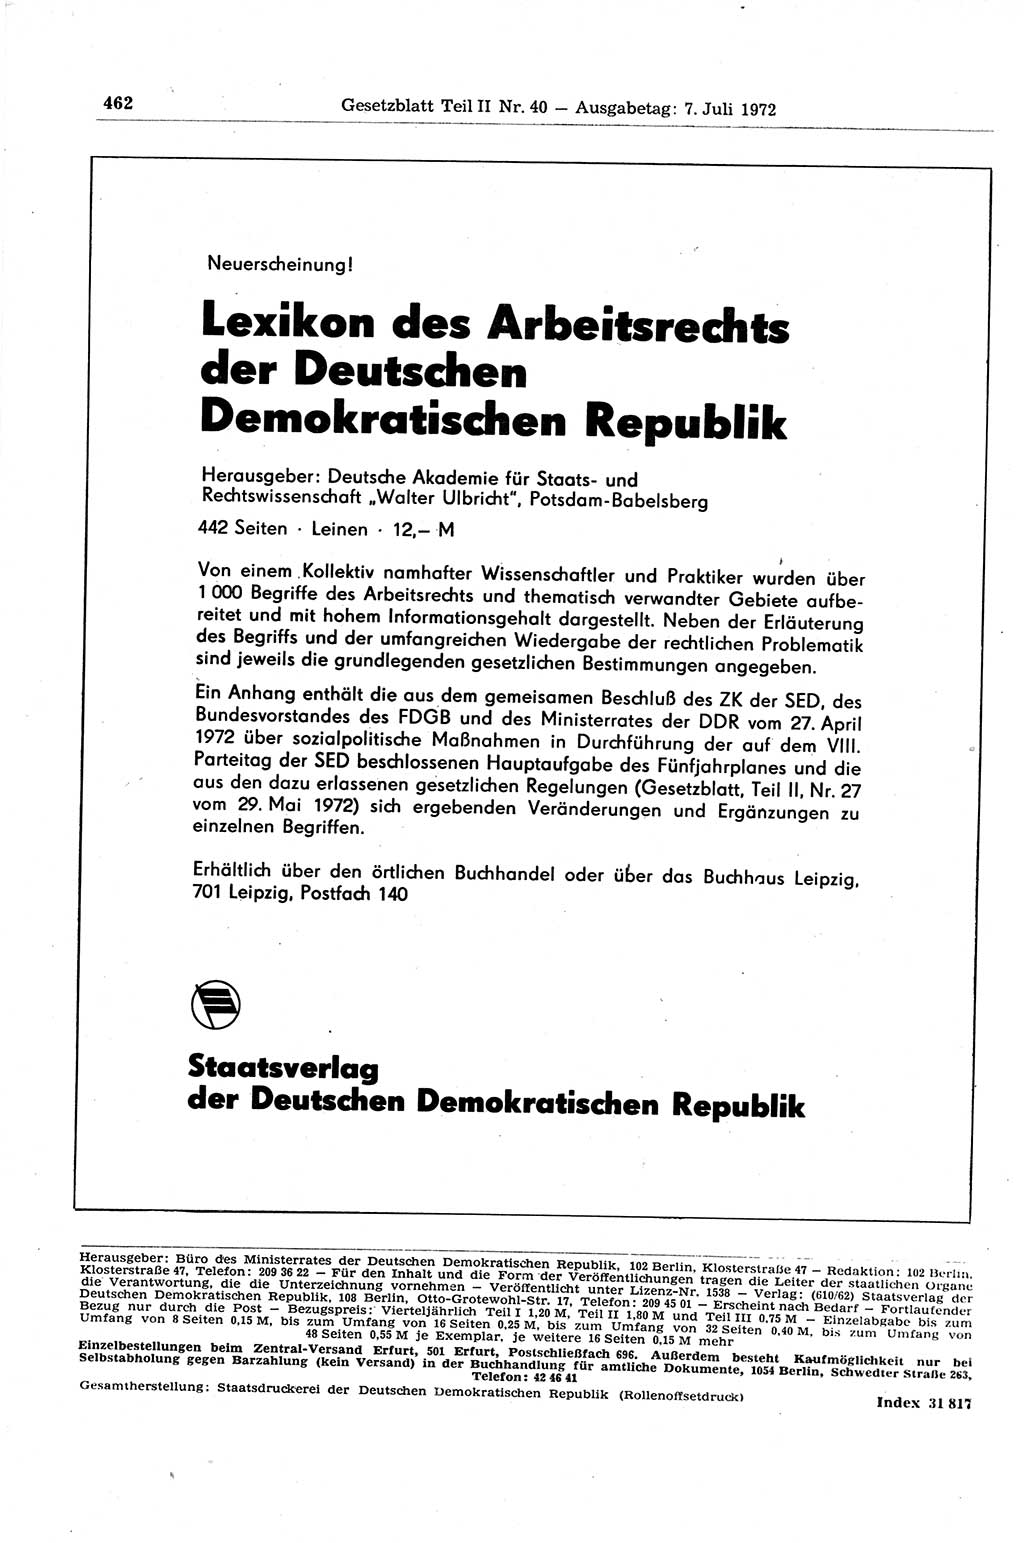 Gesetzblatt (GBl.) der Deutschen Demokratischen Republik (DDR) Teil ⅠⅠ 1972, Seite 462 (GBl. DDR ⅠⅠ 1972, S. 462)